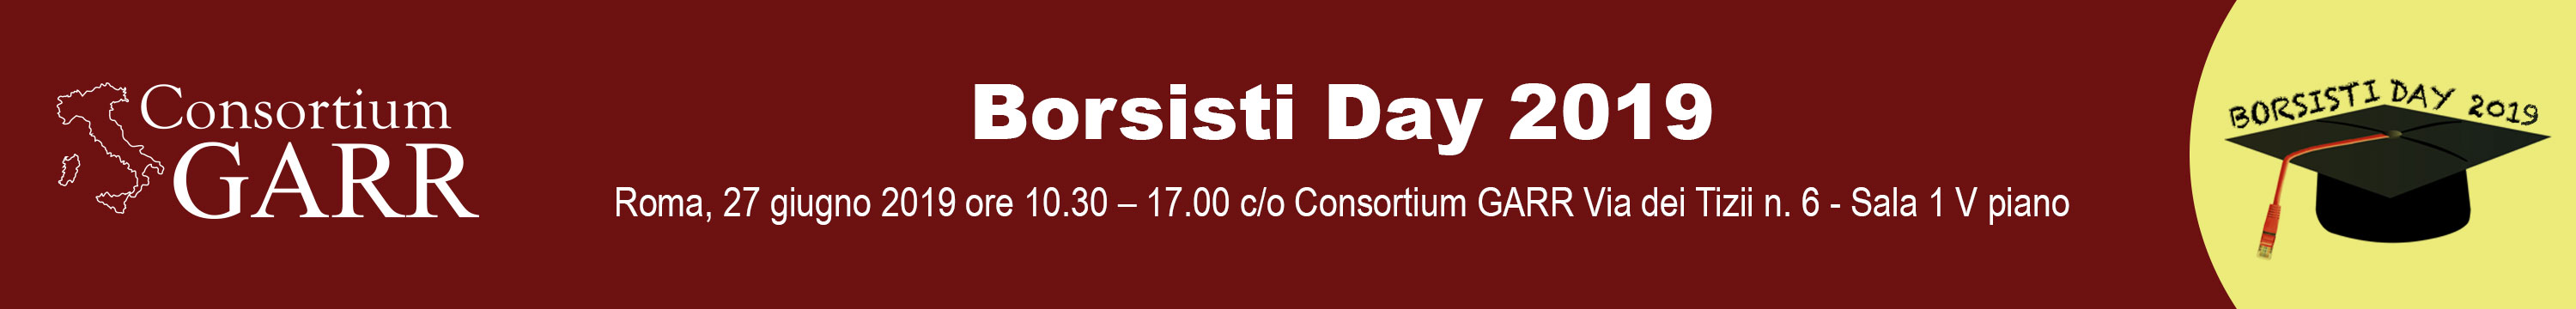 Borsisti day 2019